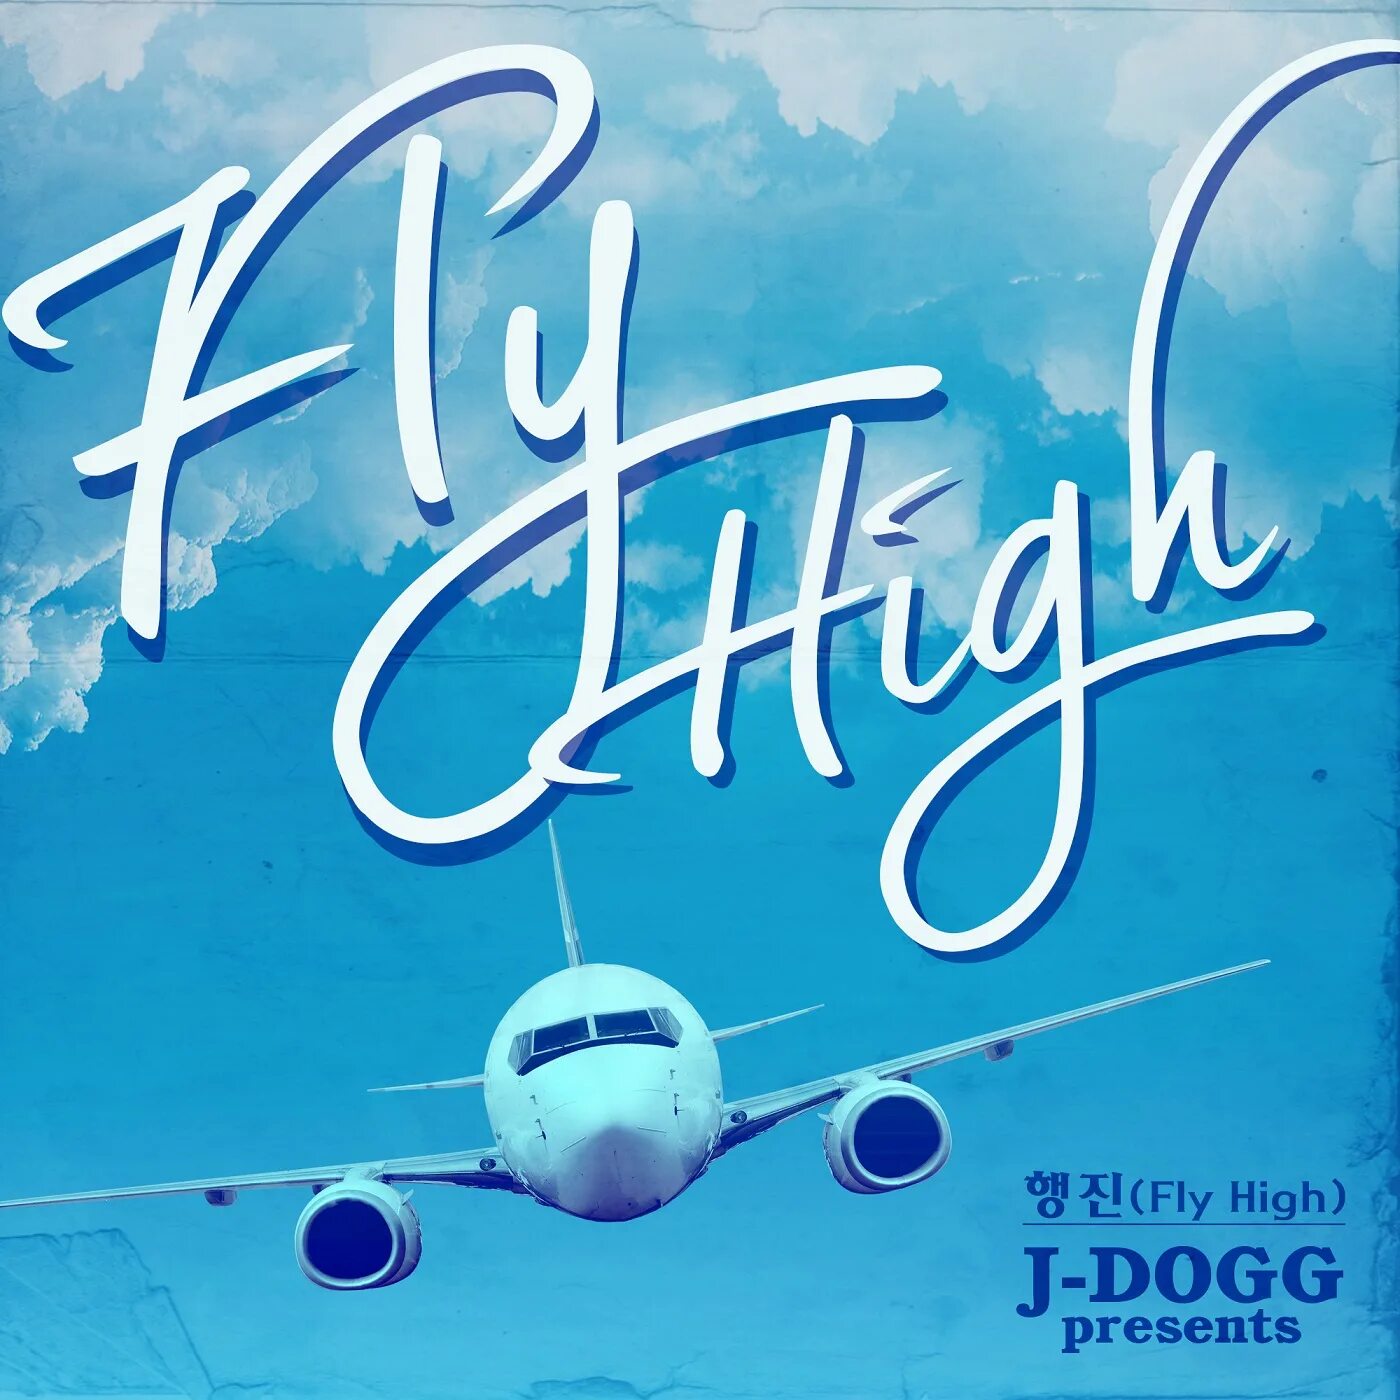 Fly high man. Fly High. Fly High activity book. Fly High 1. Fly High 2.